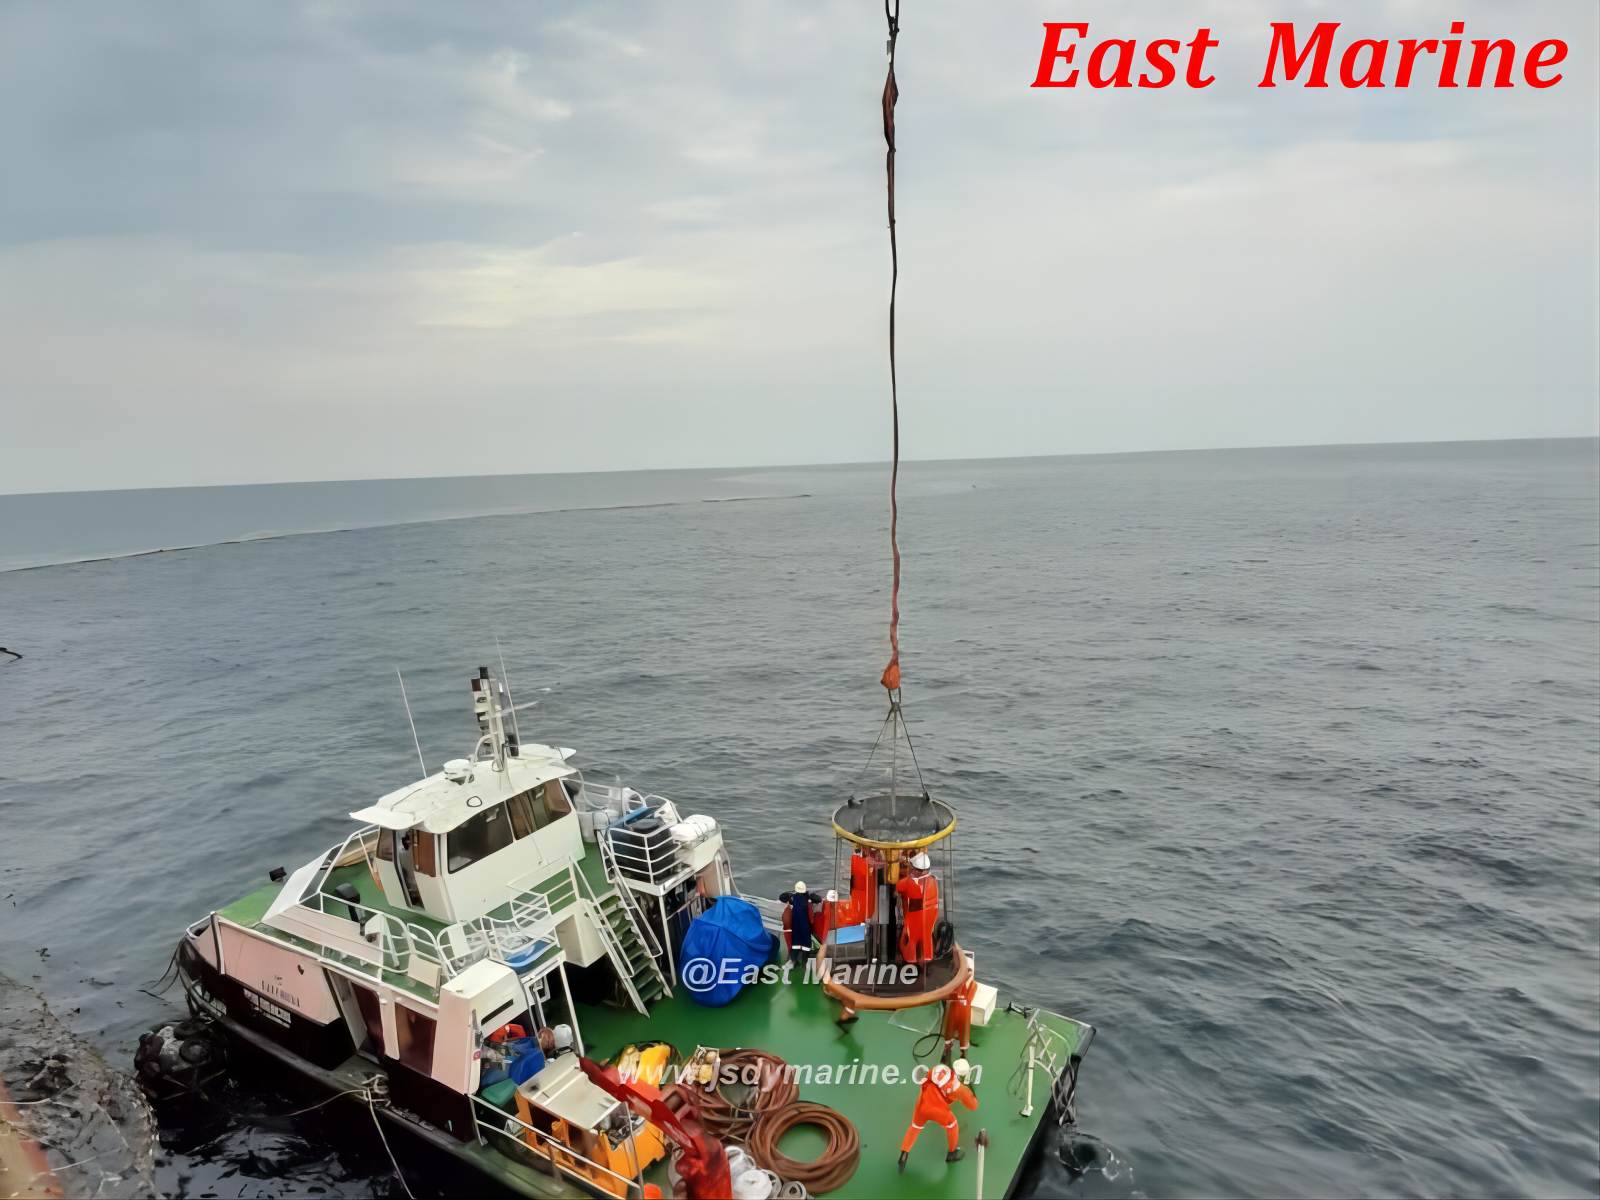 East Marine Offshore Transfer Seket заказын бүтүрдү